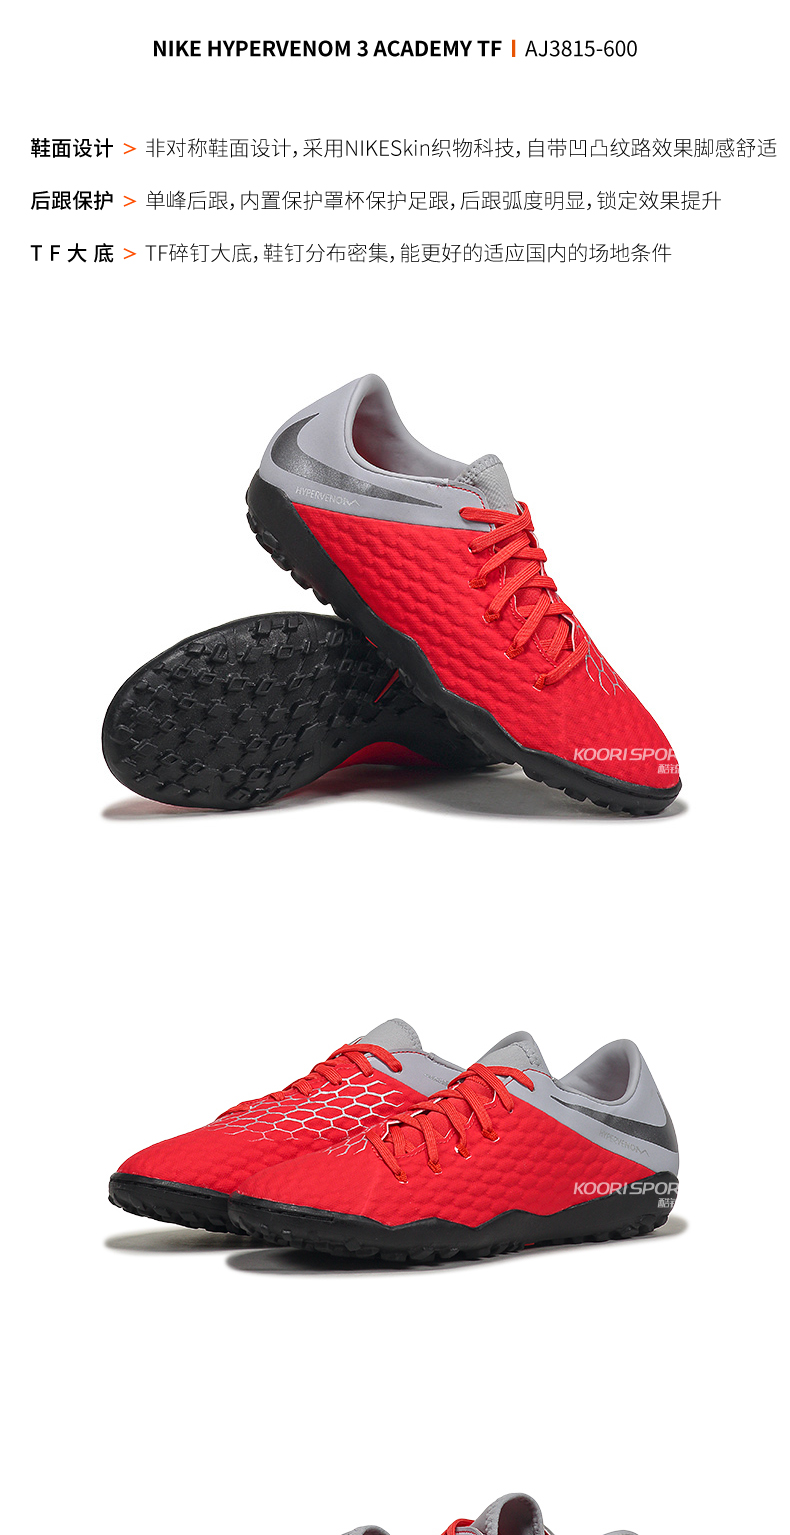 Crampon Nike Chaussures Hypervenom Ref De Phantom Fg